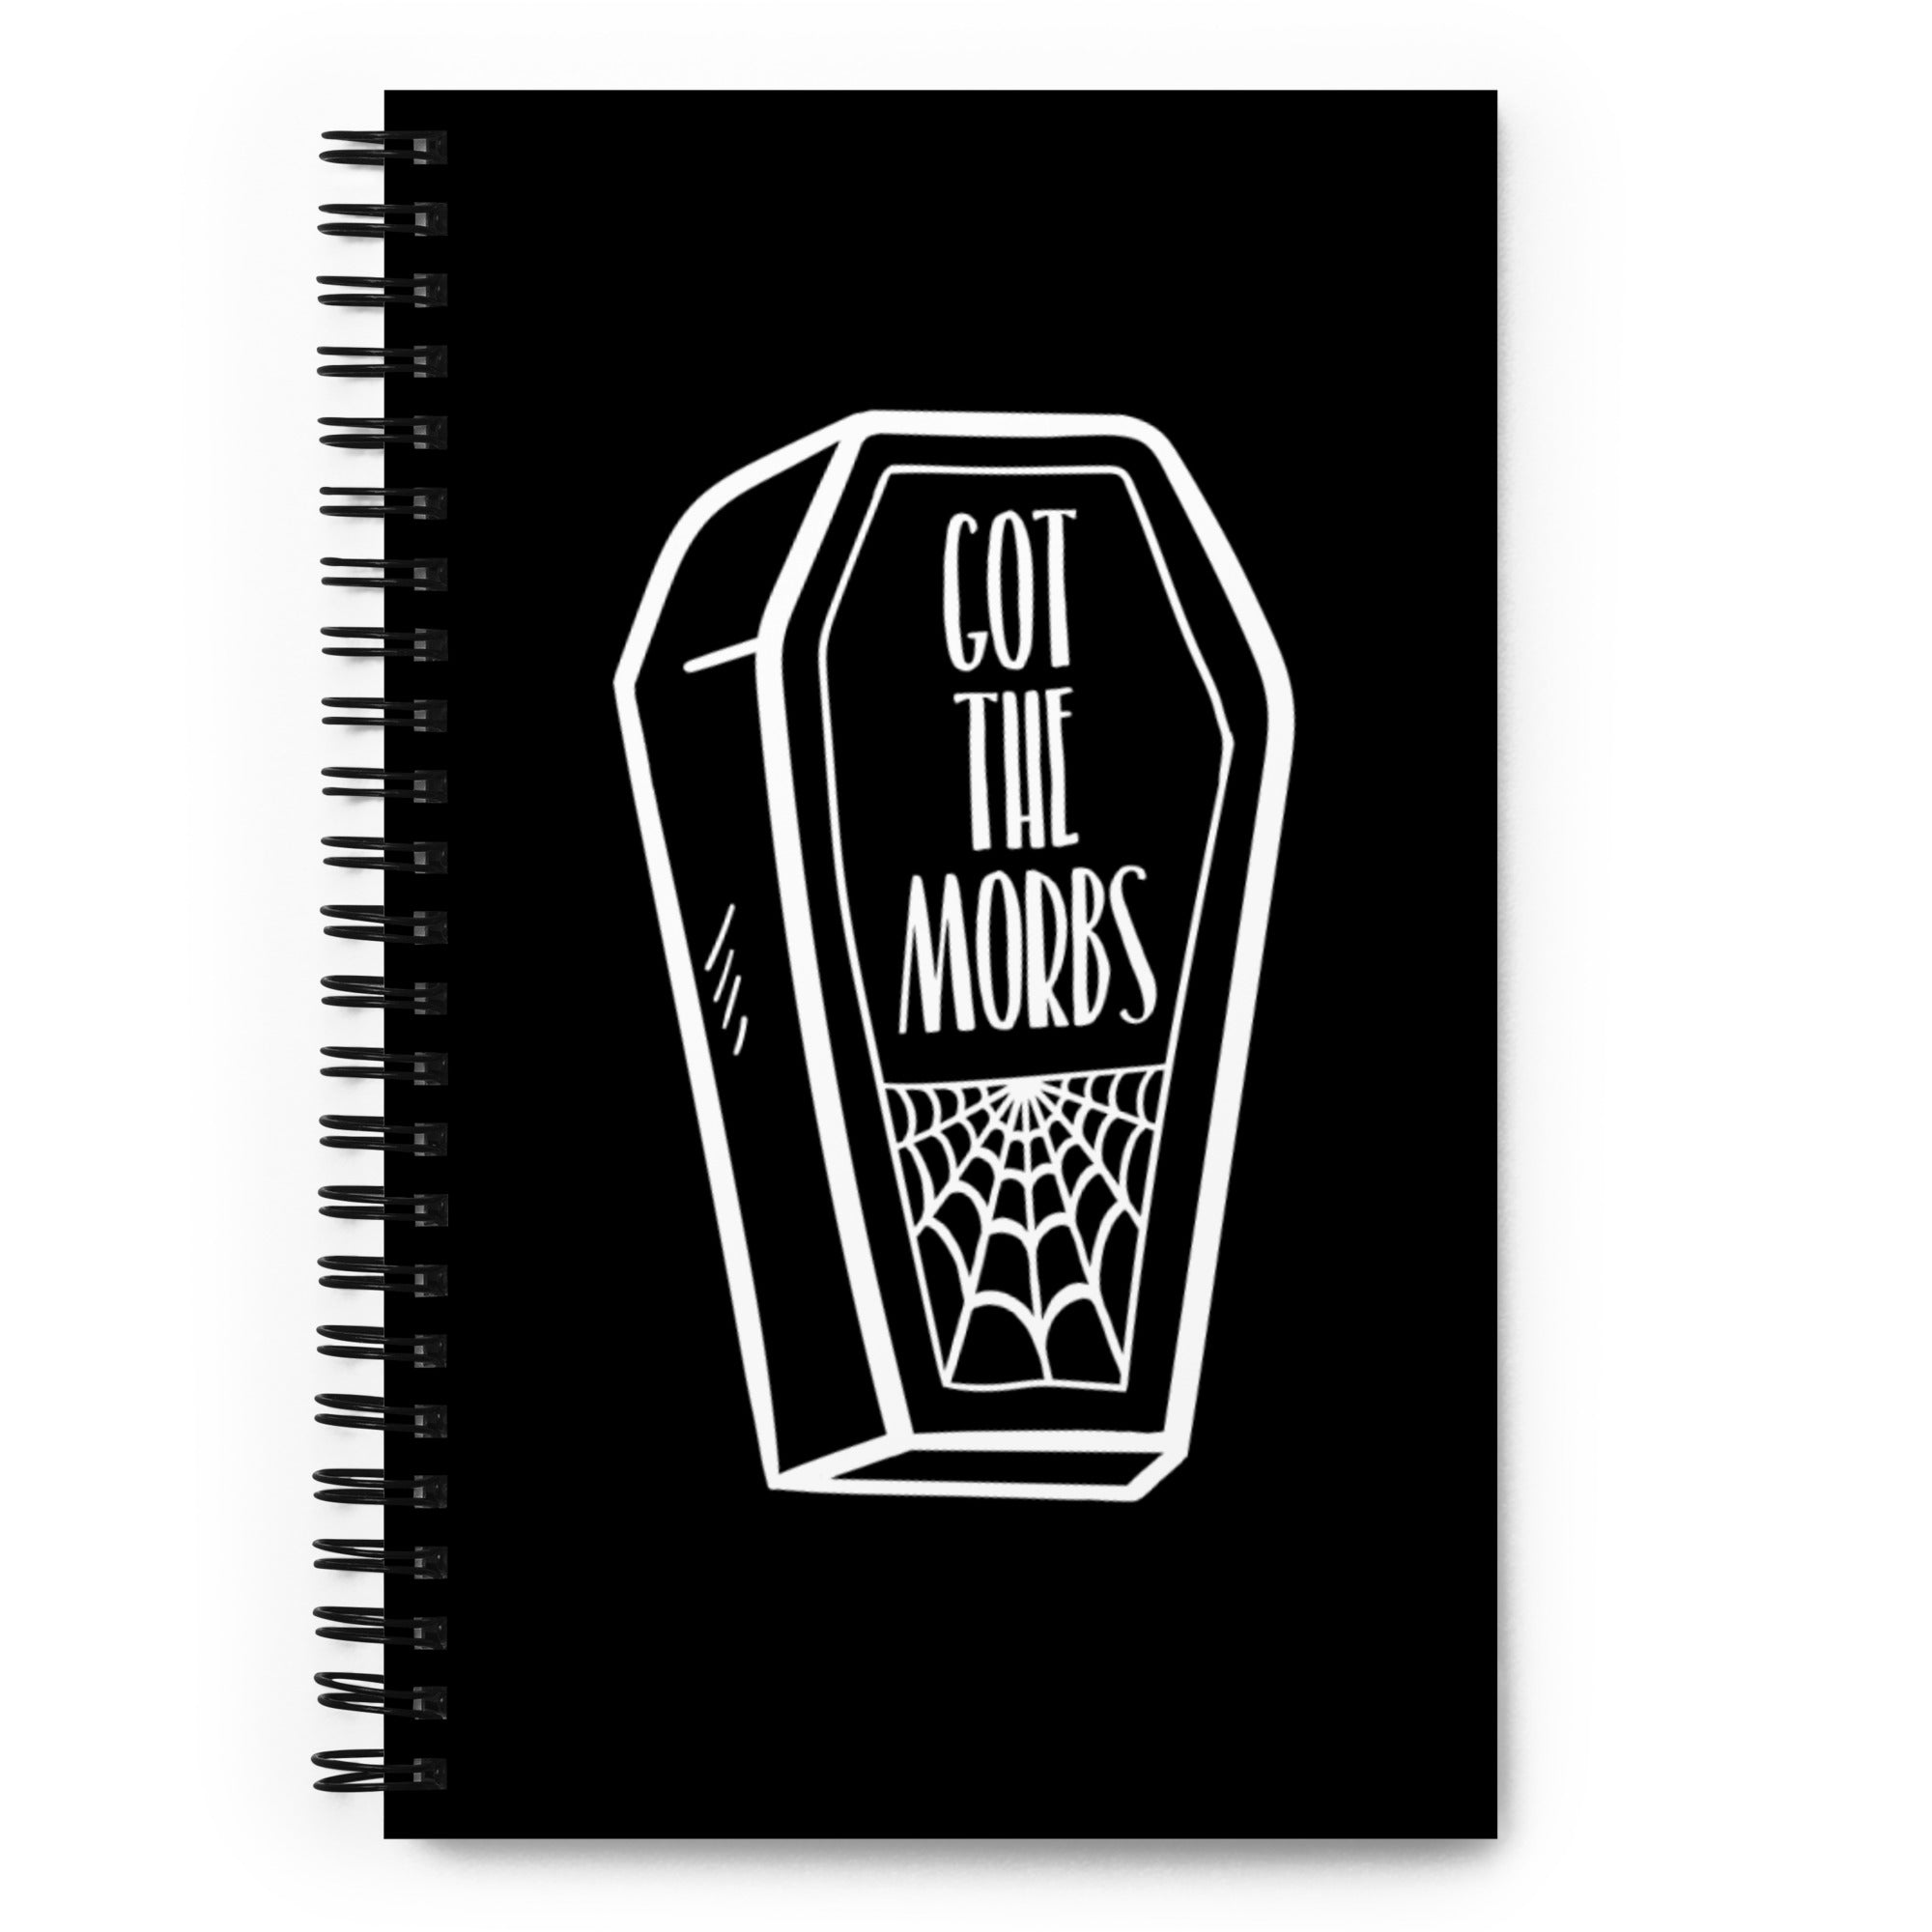 Got the Morbs Notebook